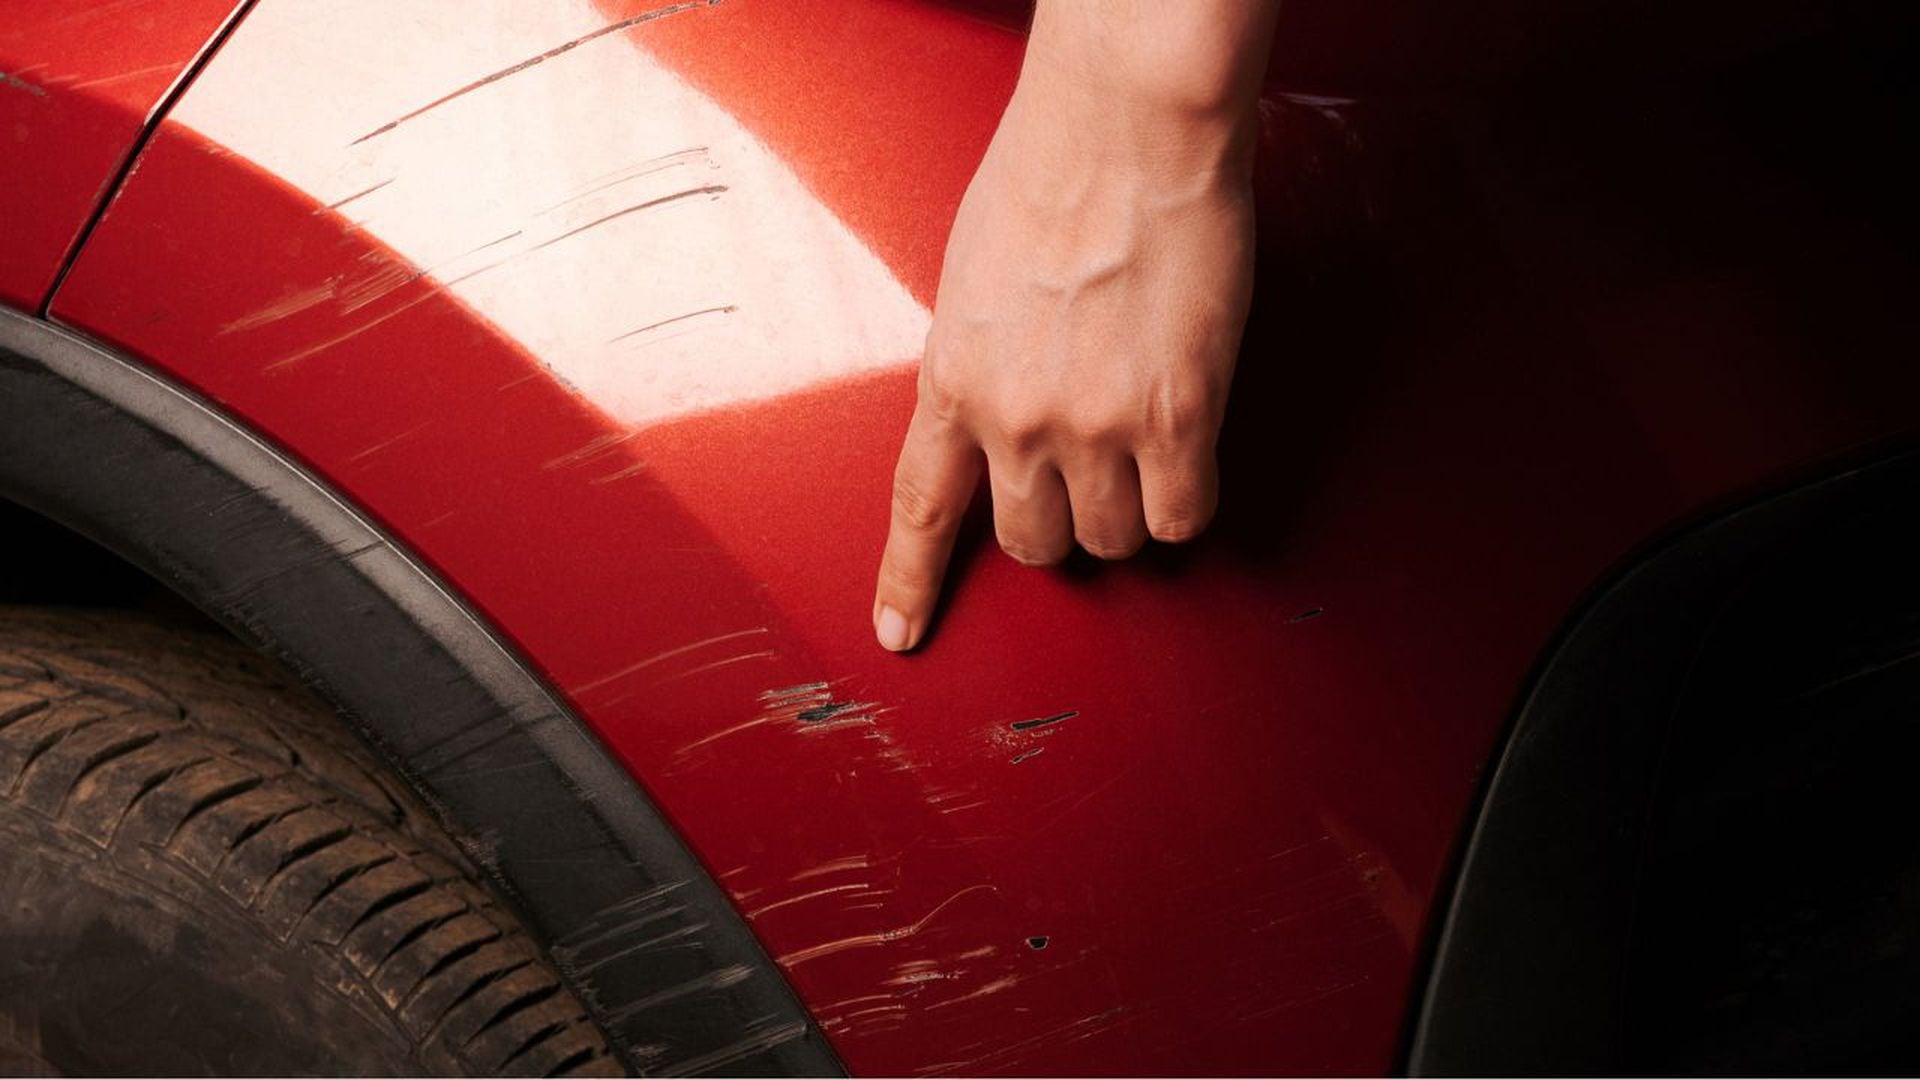 Cinco trucos caseros para eliminar rayones del carro en pocos